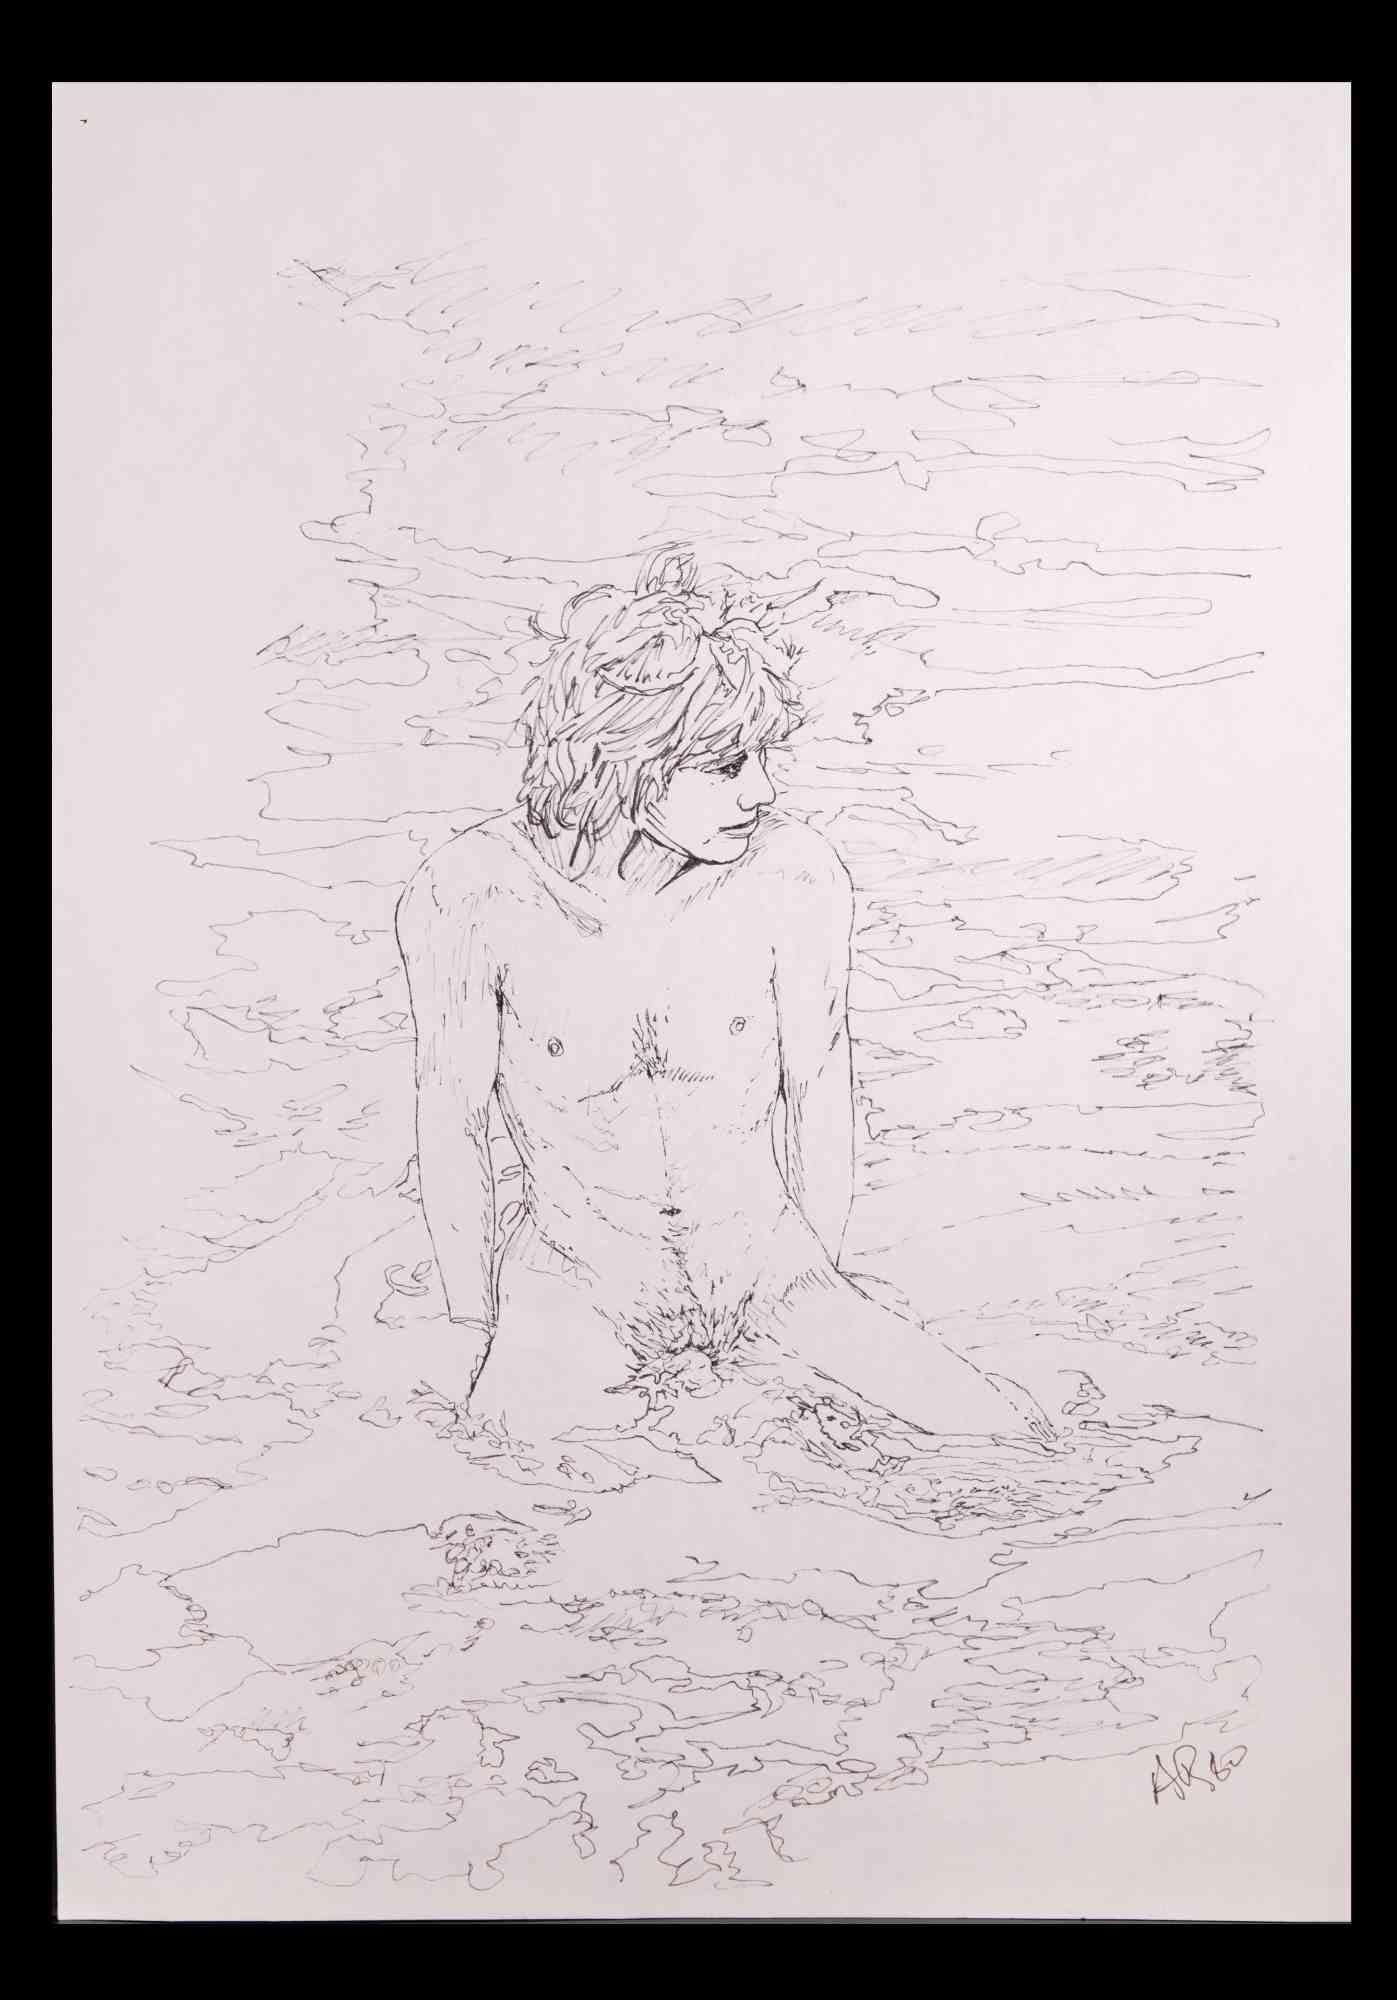 Der Junge am Meer ist eine Original-Zeichnung Stift  realisiert von Anthony Roaland im Jahr 1980. Vom Künstler am rechten unteren Rand handsigniert und datiert. 

Das Kunstwerk stellt eine frische und schöne nackte männliche Figur dar.

Gute